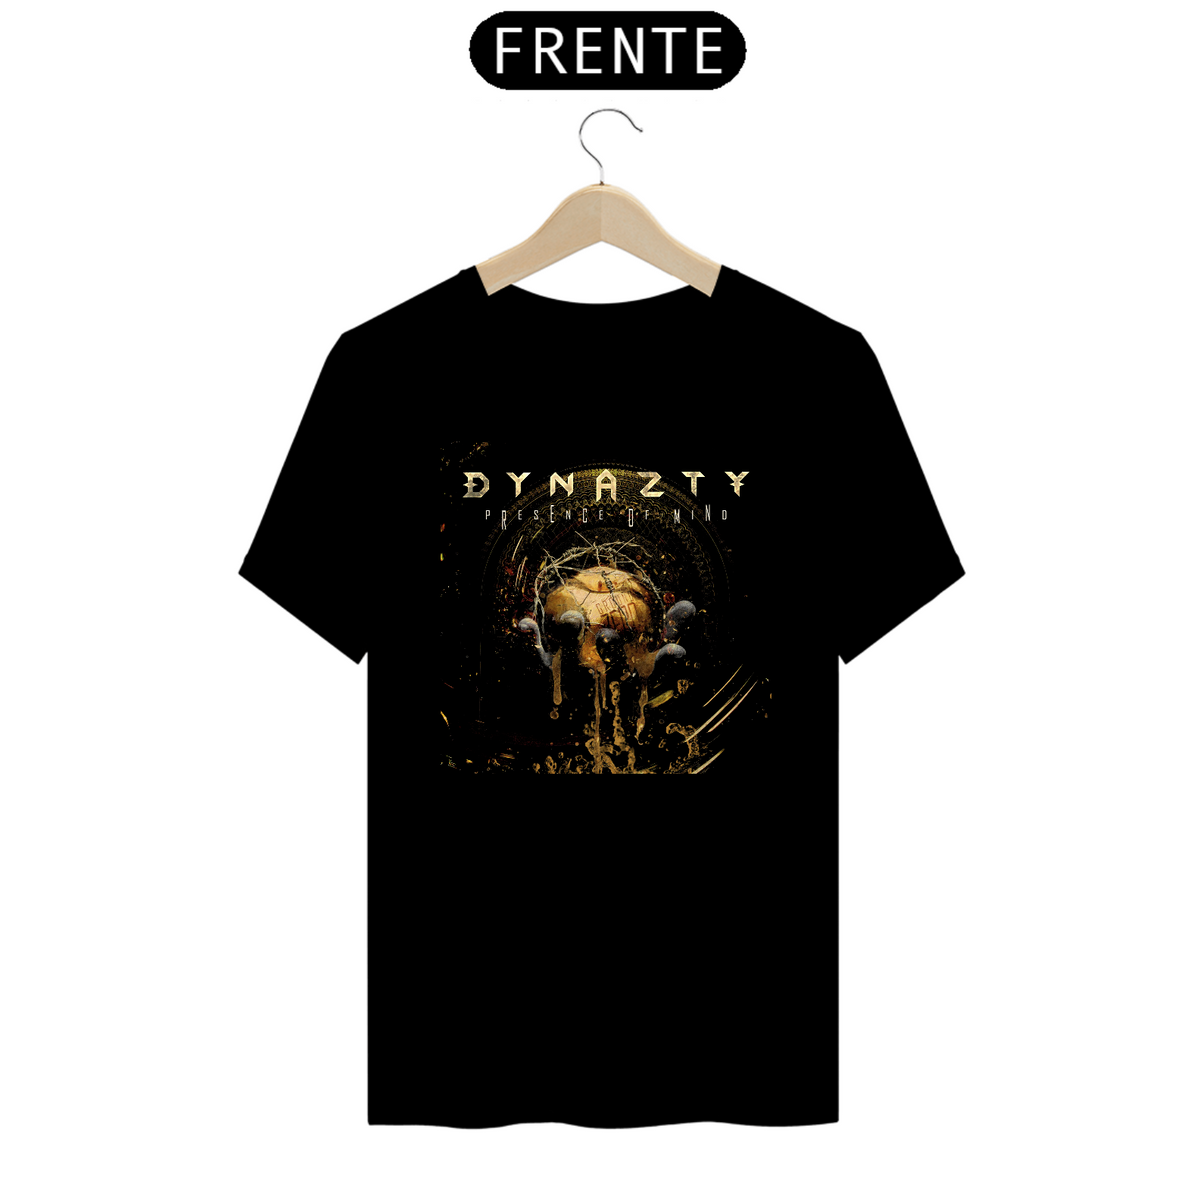 Nome do produto: Camisa Dynazty - Presence of Mind